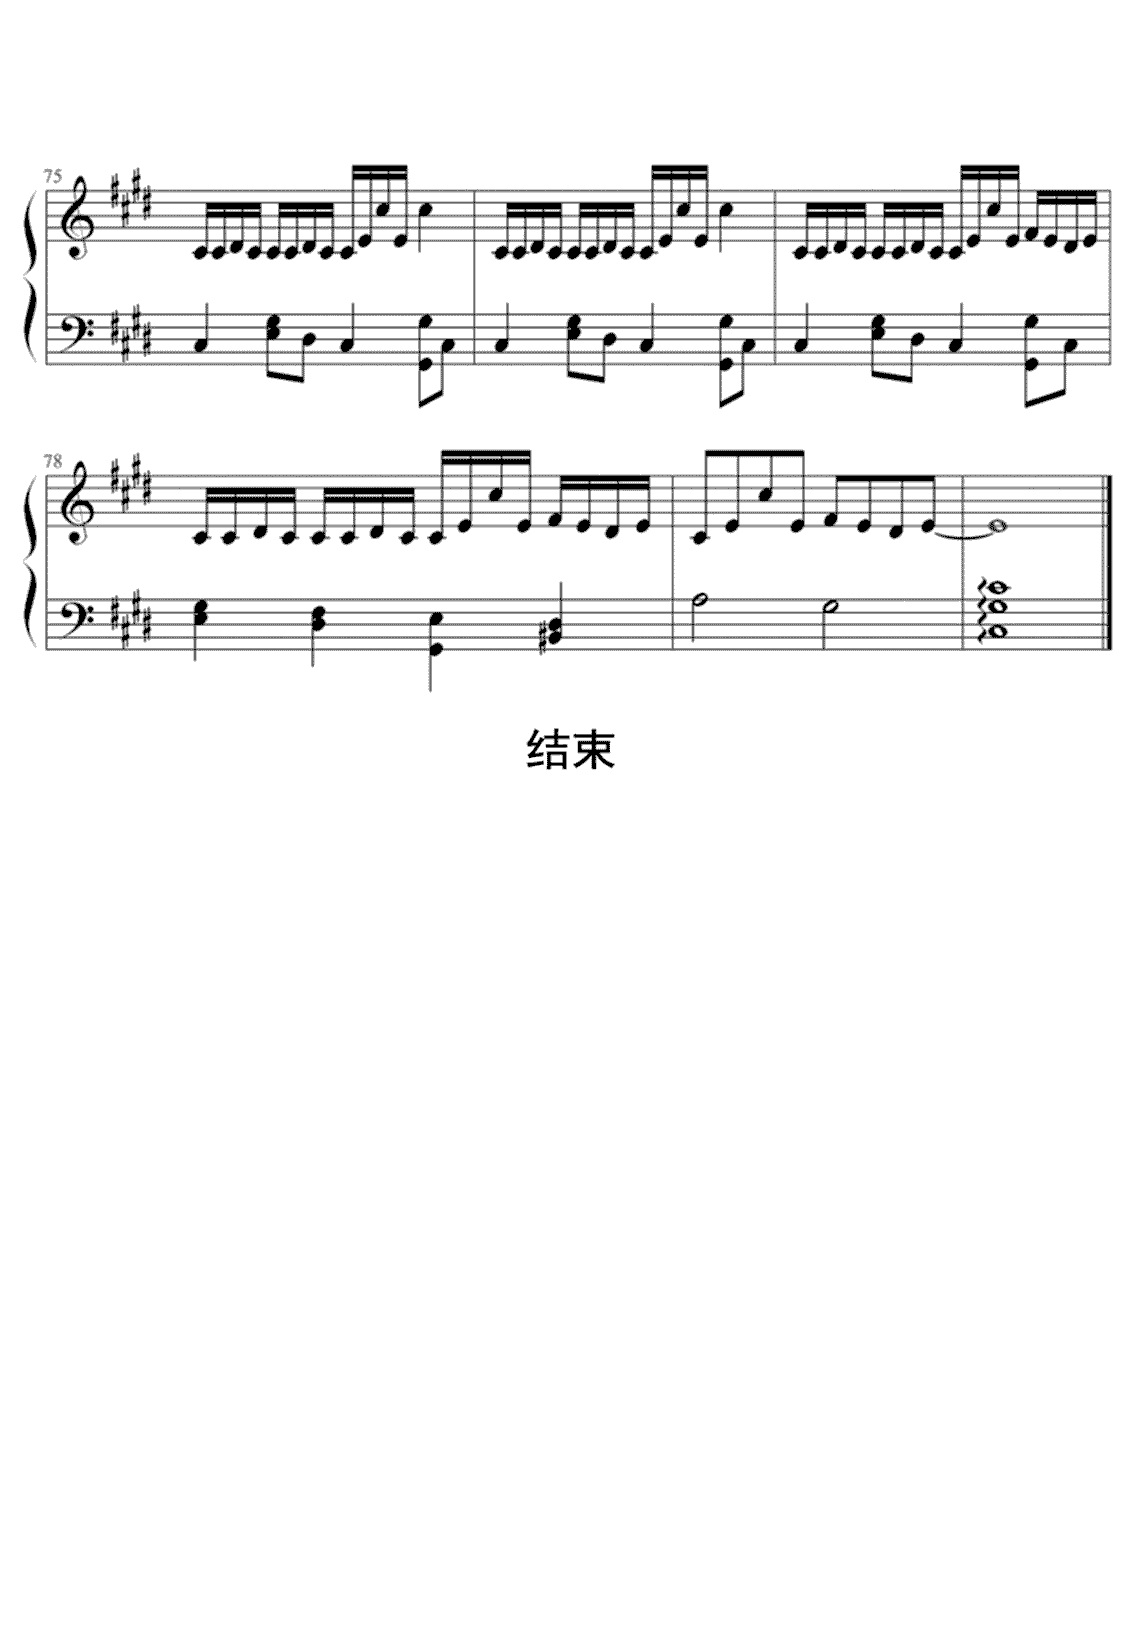 【止战之殇】的钢琴谱简谱 – 周杰伦